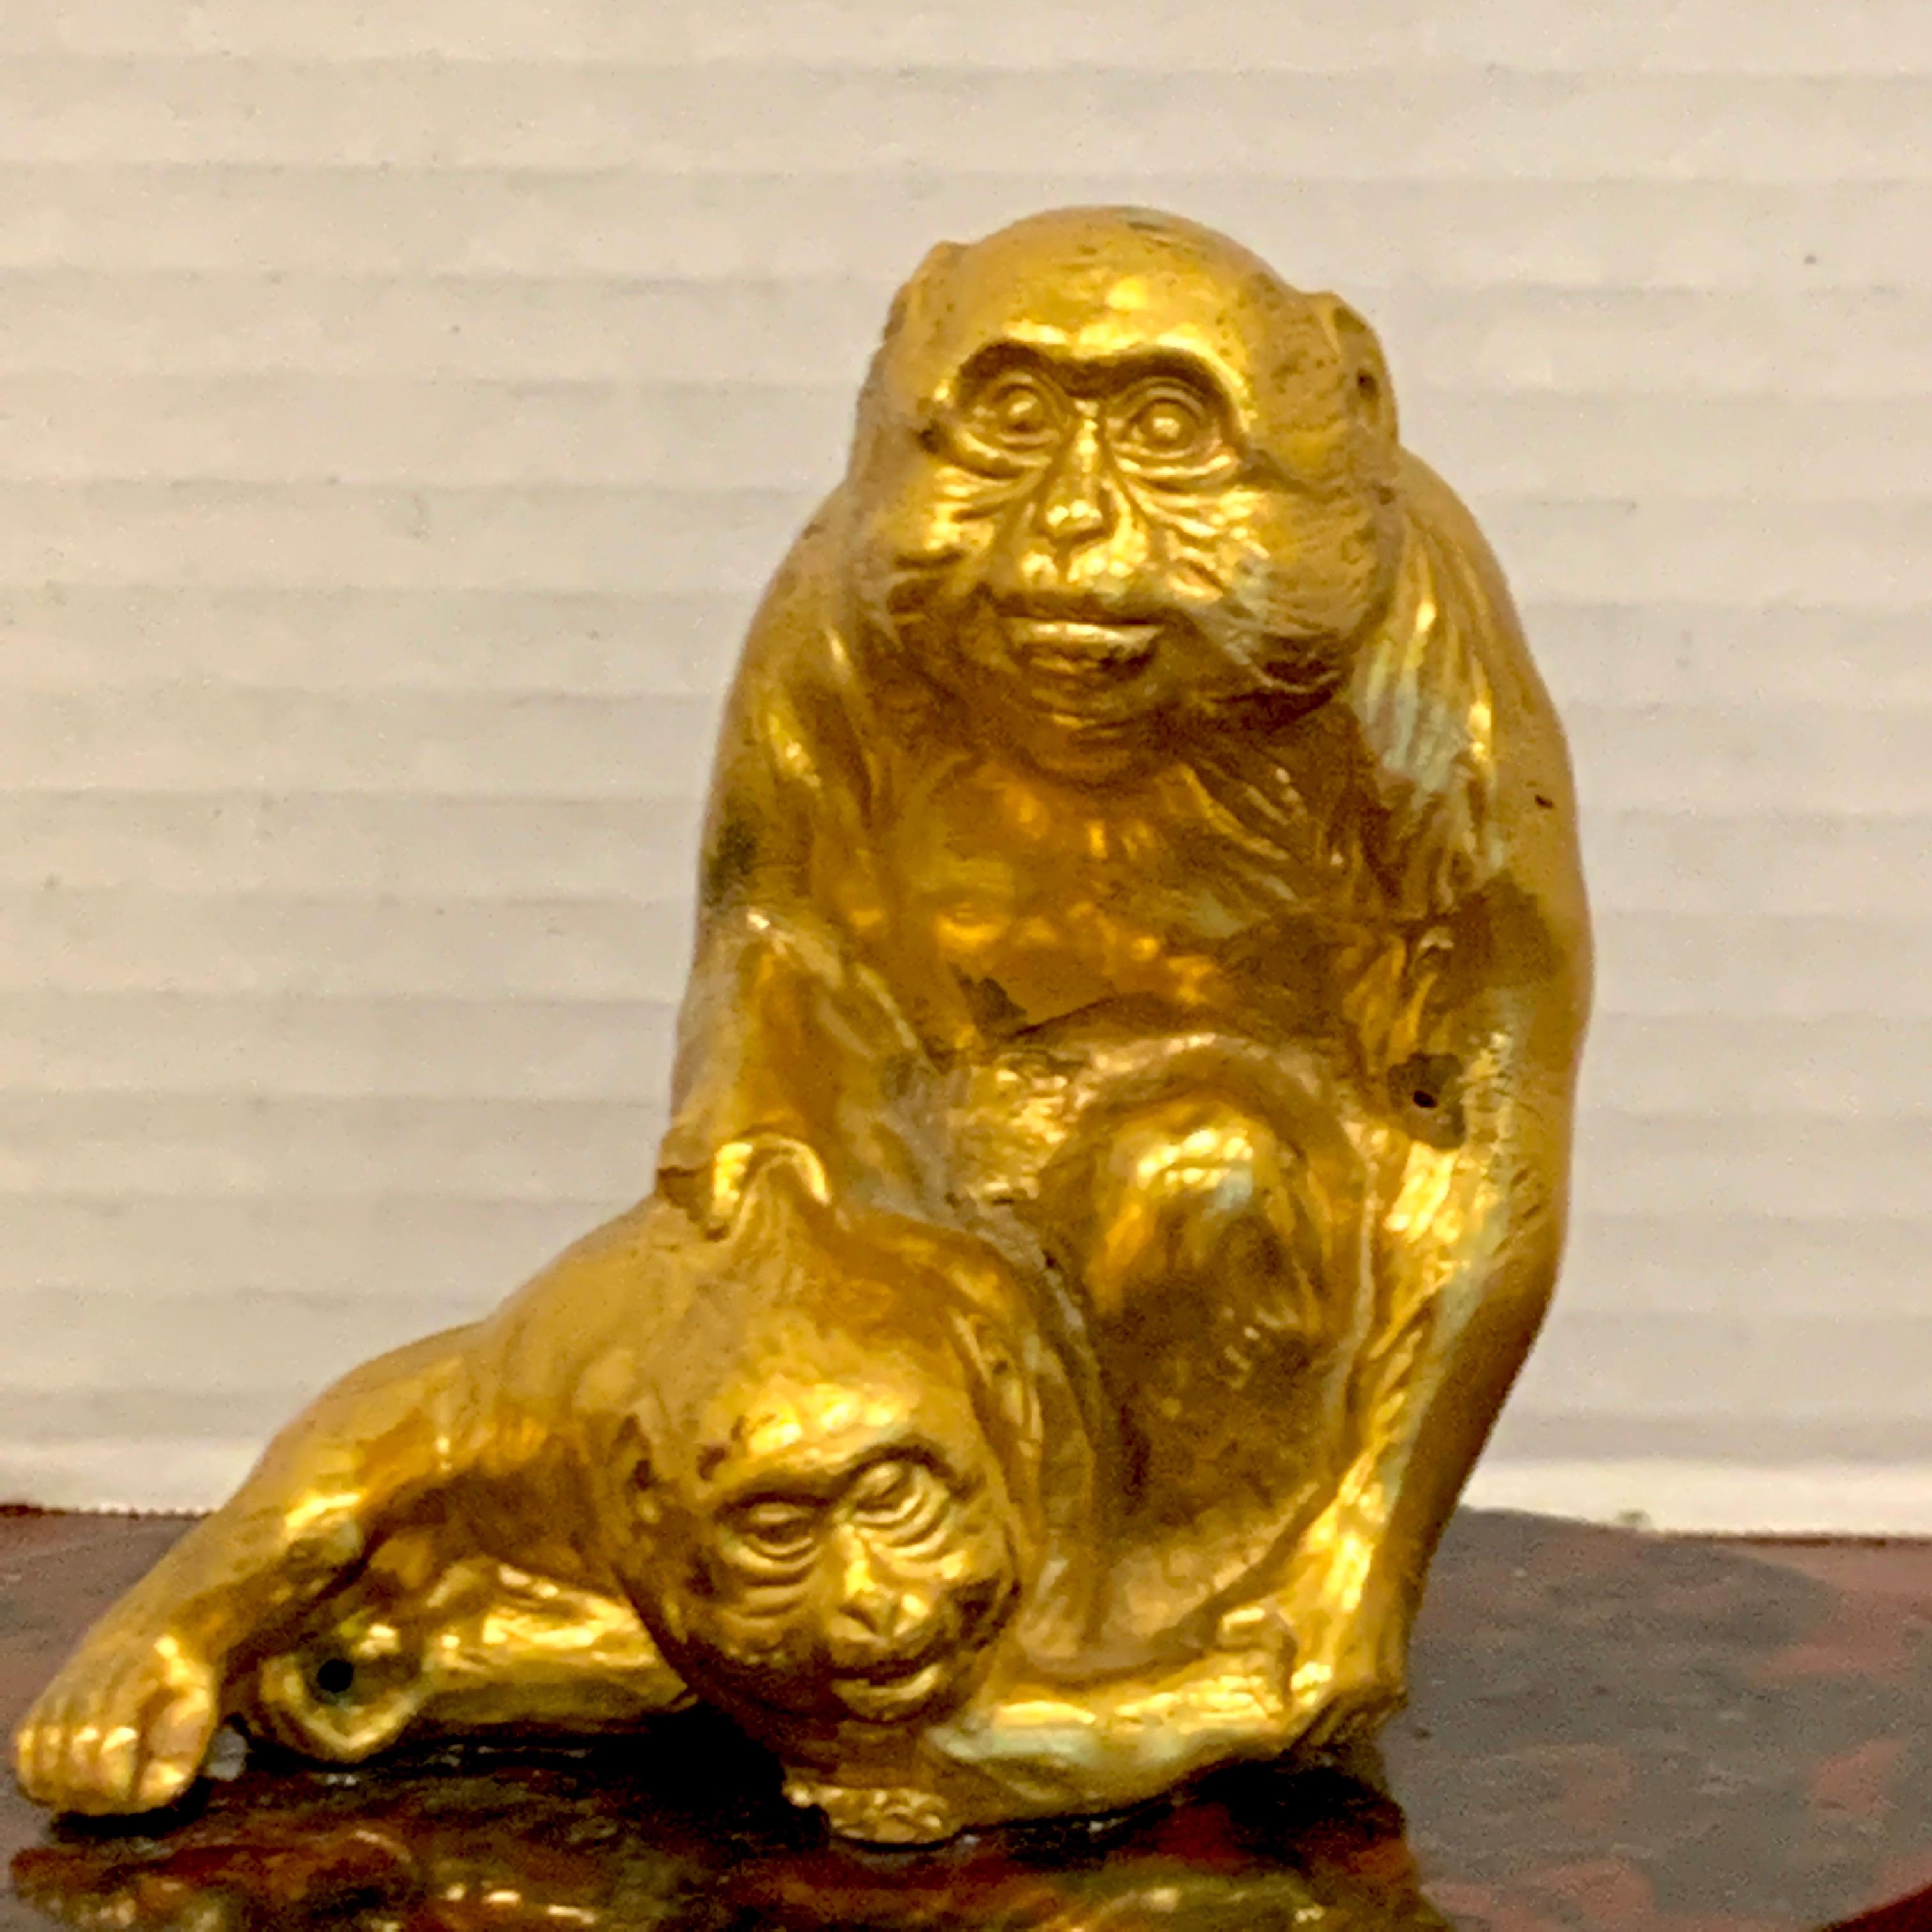 Sculpture française en bronze doré représentant des singes assis, joliment détaillée, deux primates assis expressifs, fixés à une base ovale en marbre sanguin, non signée.
   